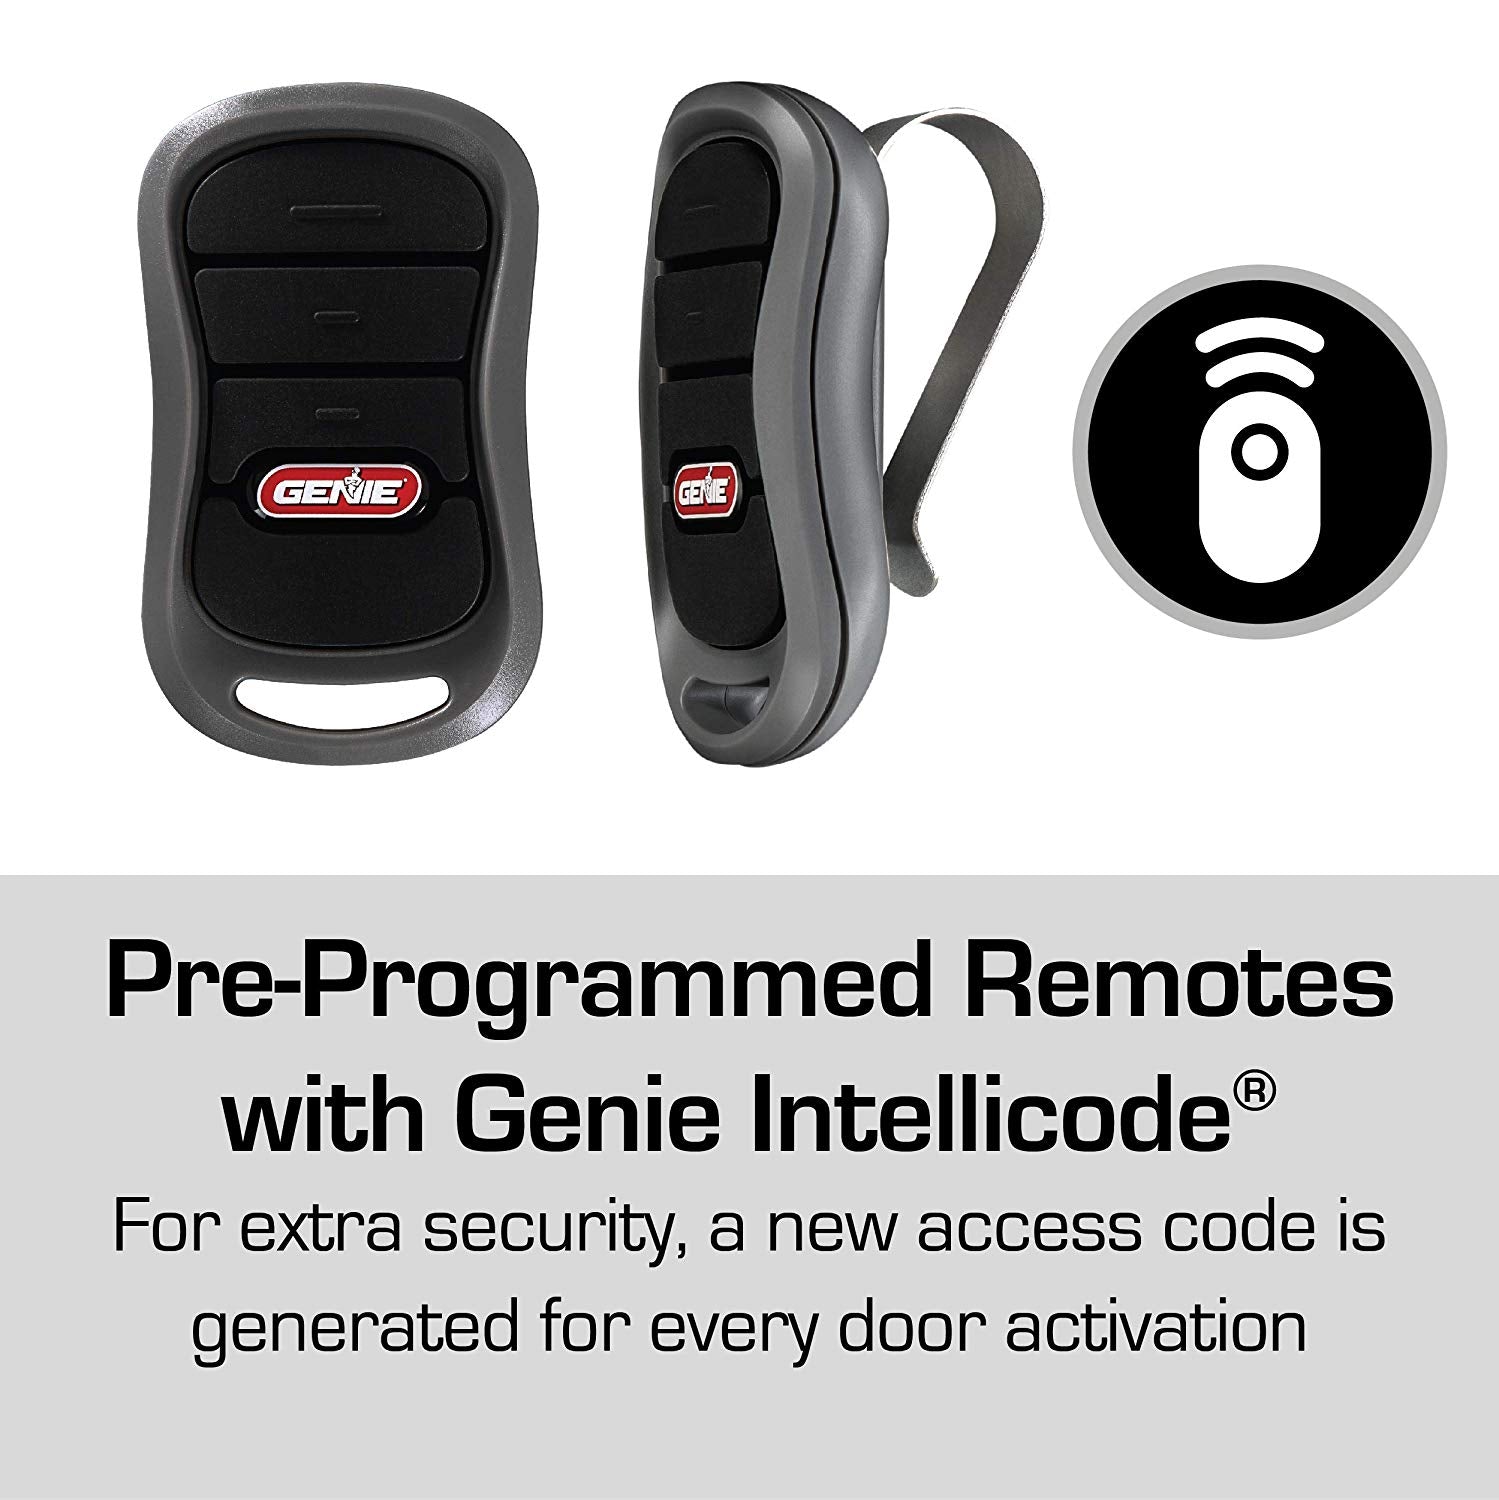 Genie Intellicode pre-programmed remotes